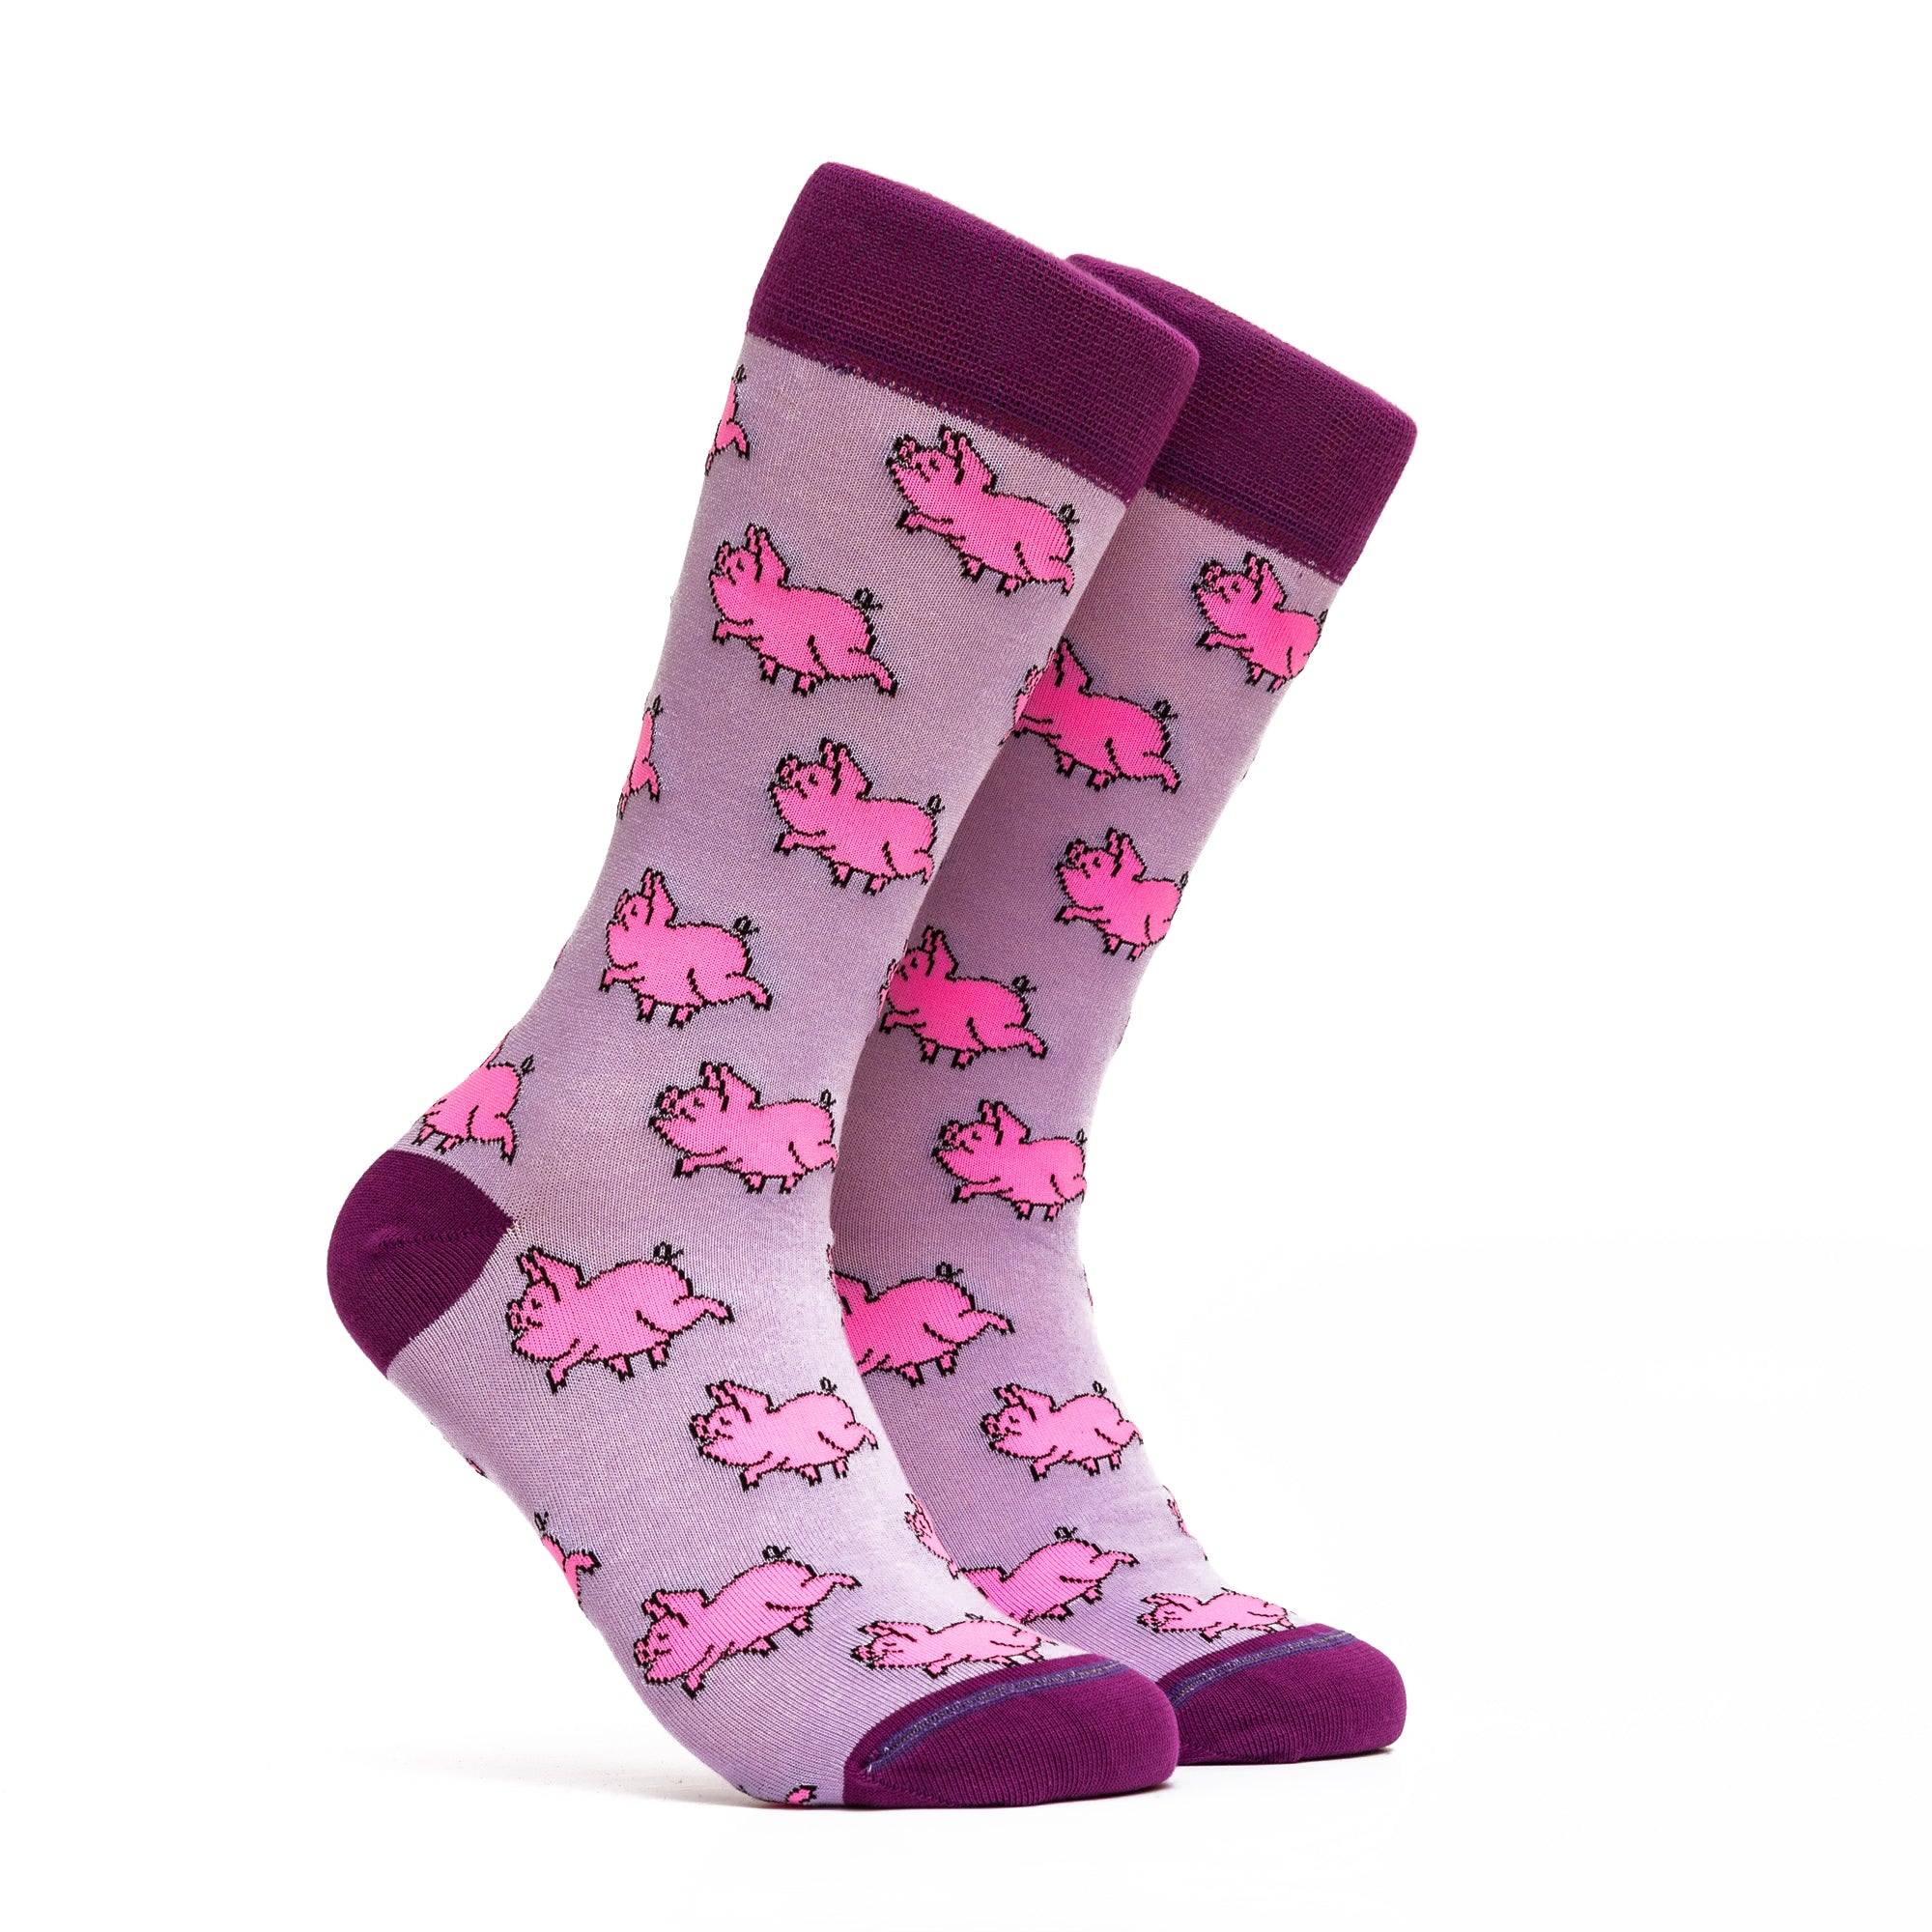 The Big Pig Socks - Color Pink